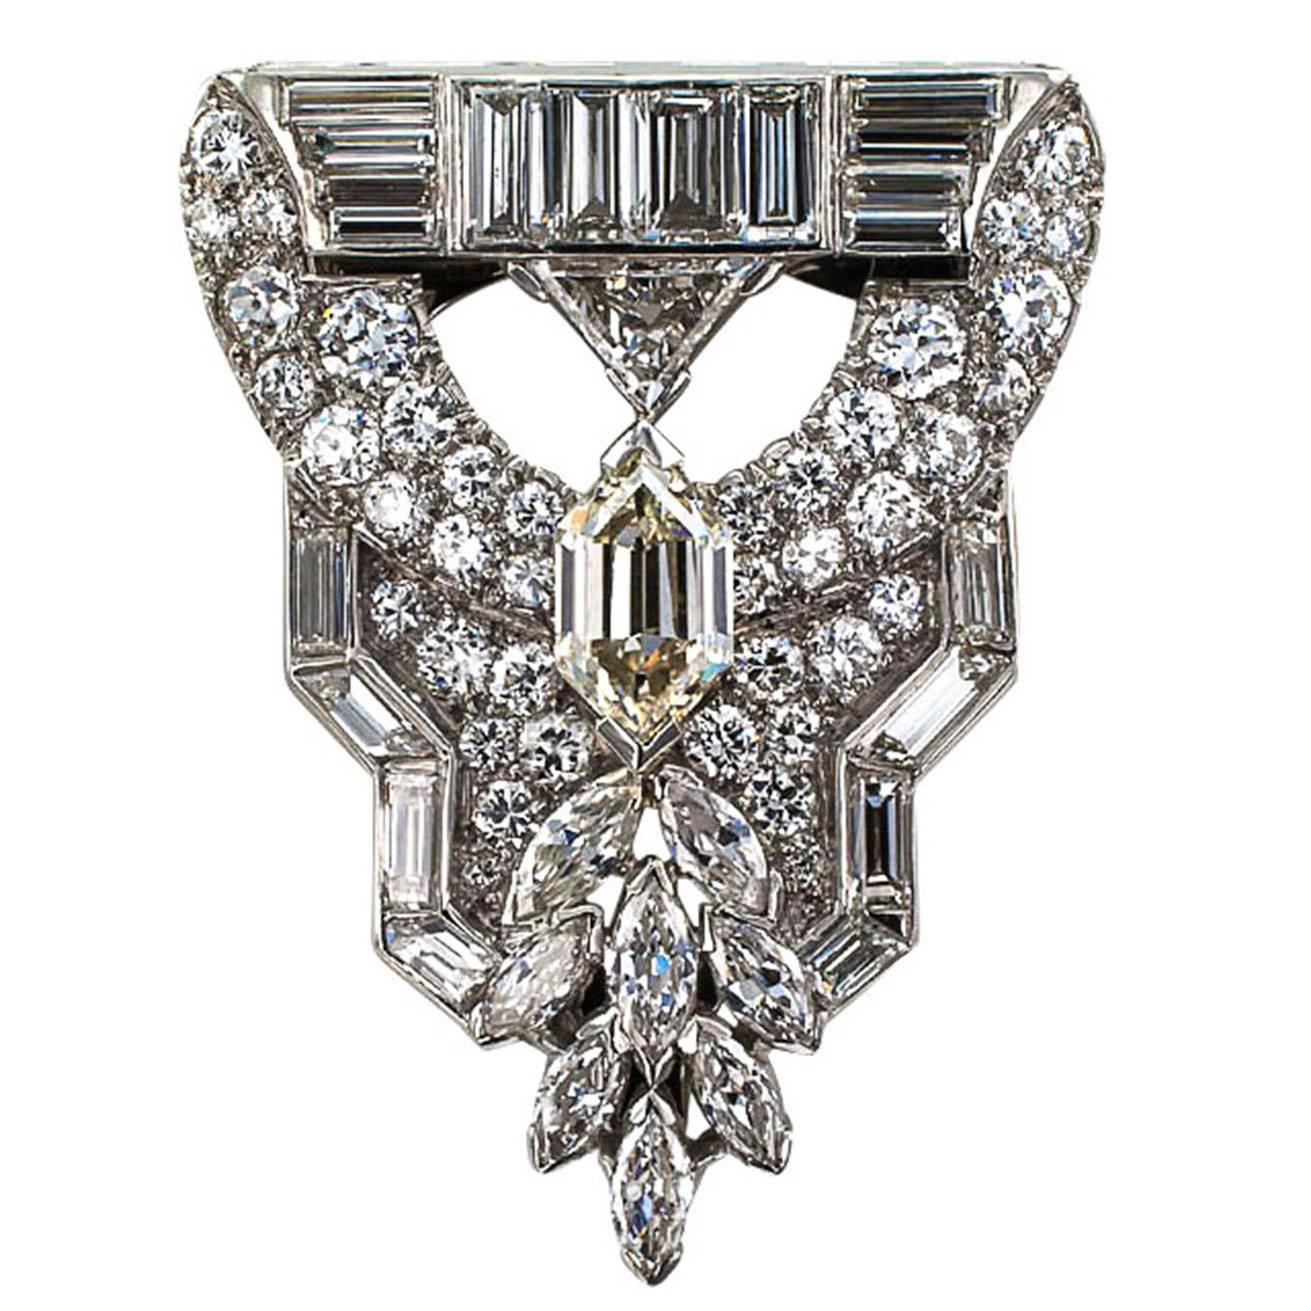 Fancy-Cut Diamond Art Deco Clip/Brooch

